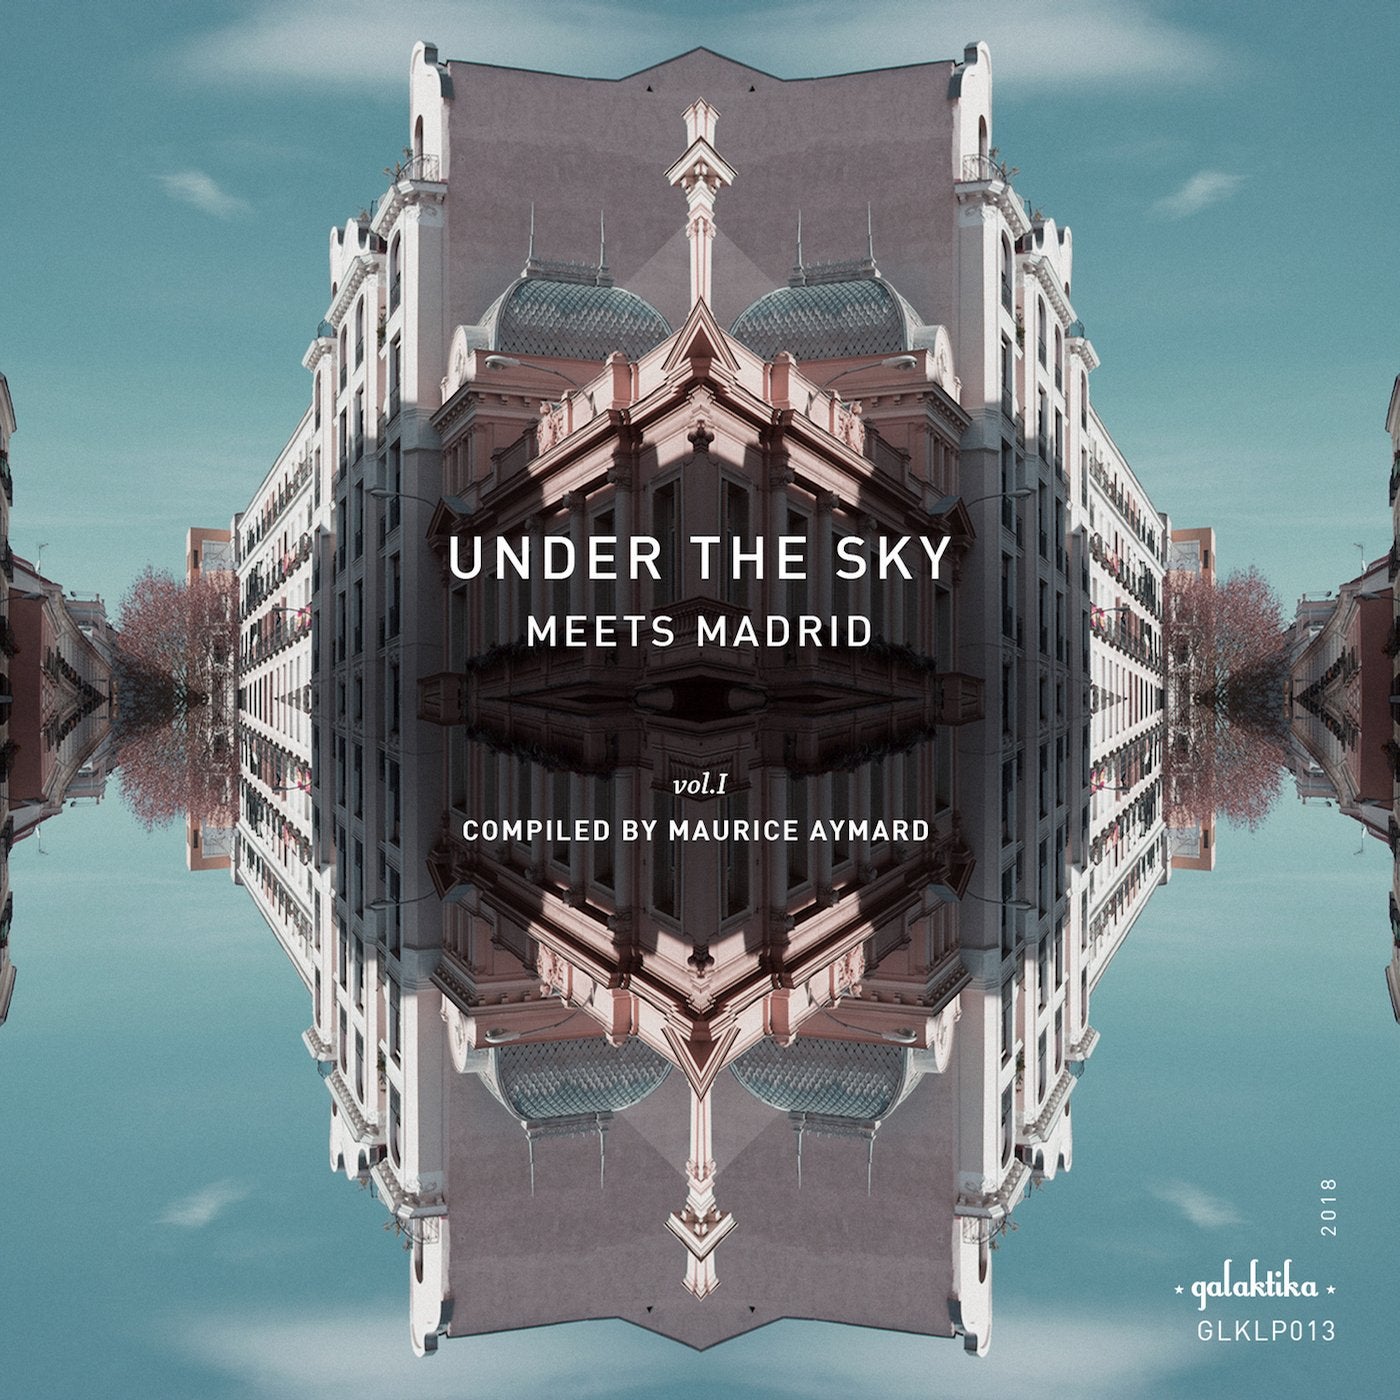 Under the sky meets Madrid Vol I